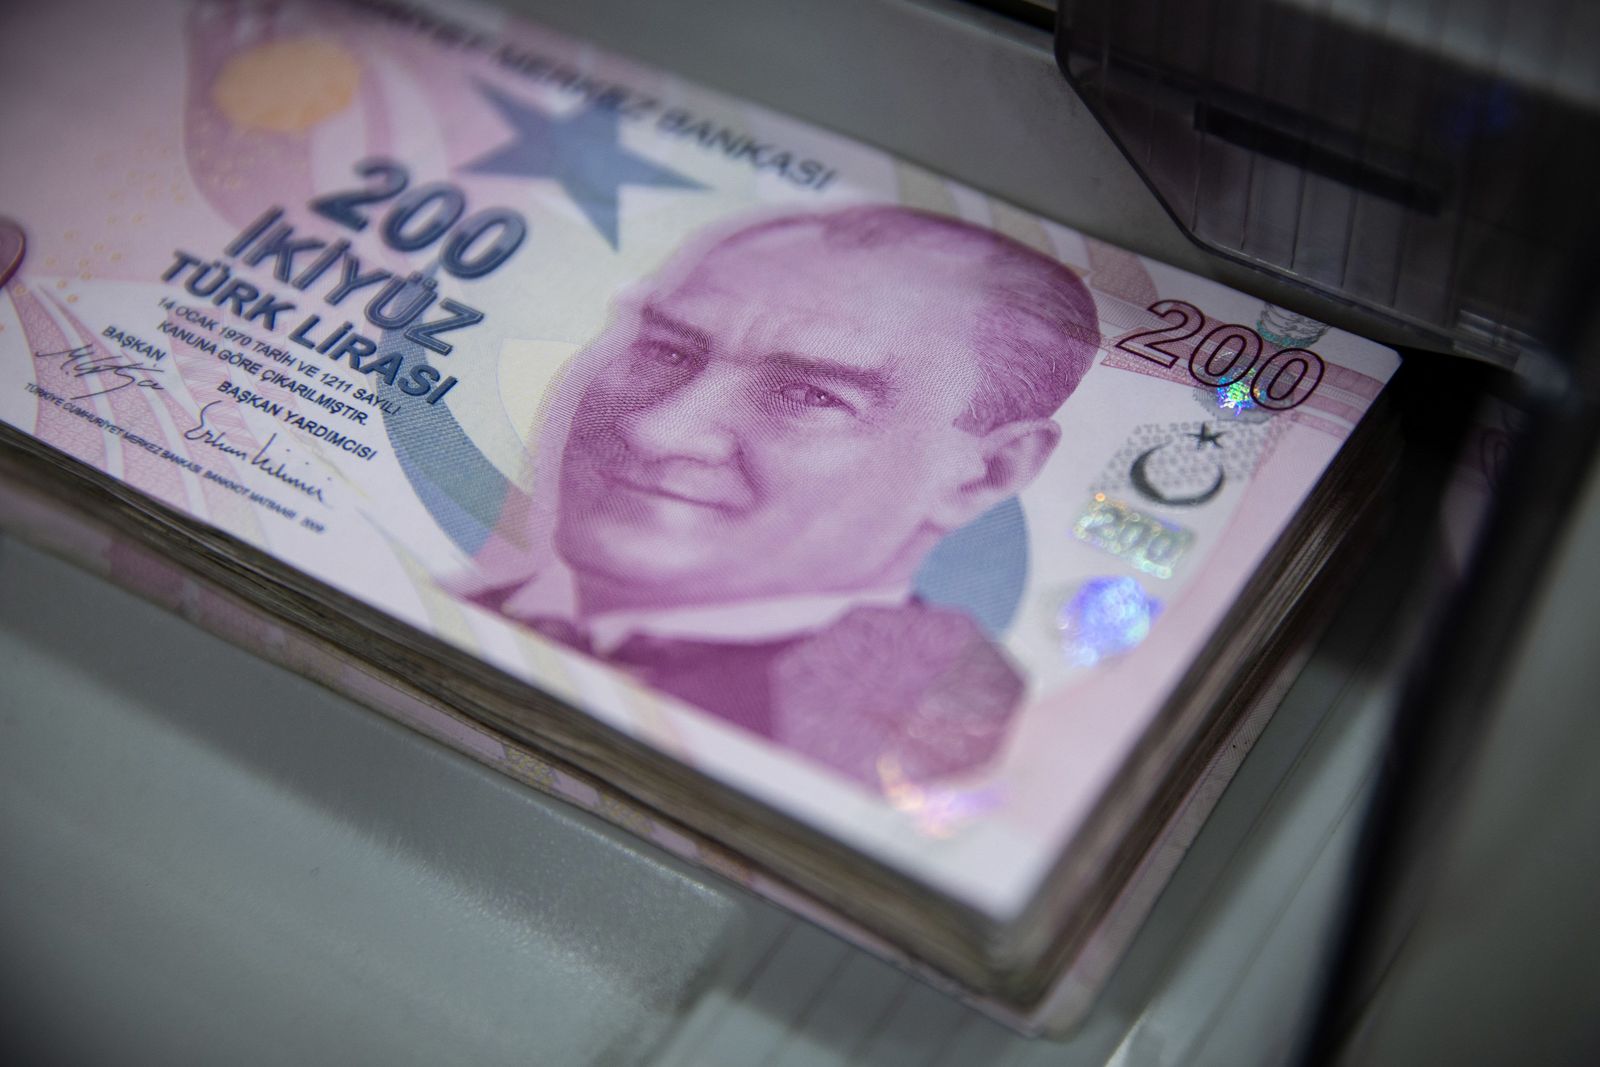 أوراق نقدية من فئة 200 ليرة تركية في مكتب صيرفة باسطنبول - 11 أغسطس 2020 - Bloomberg